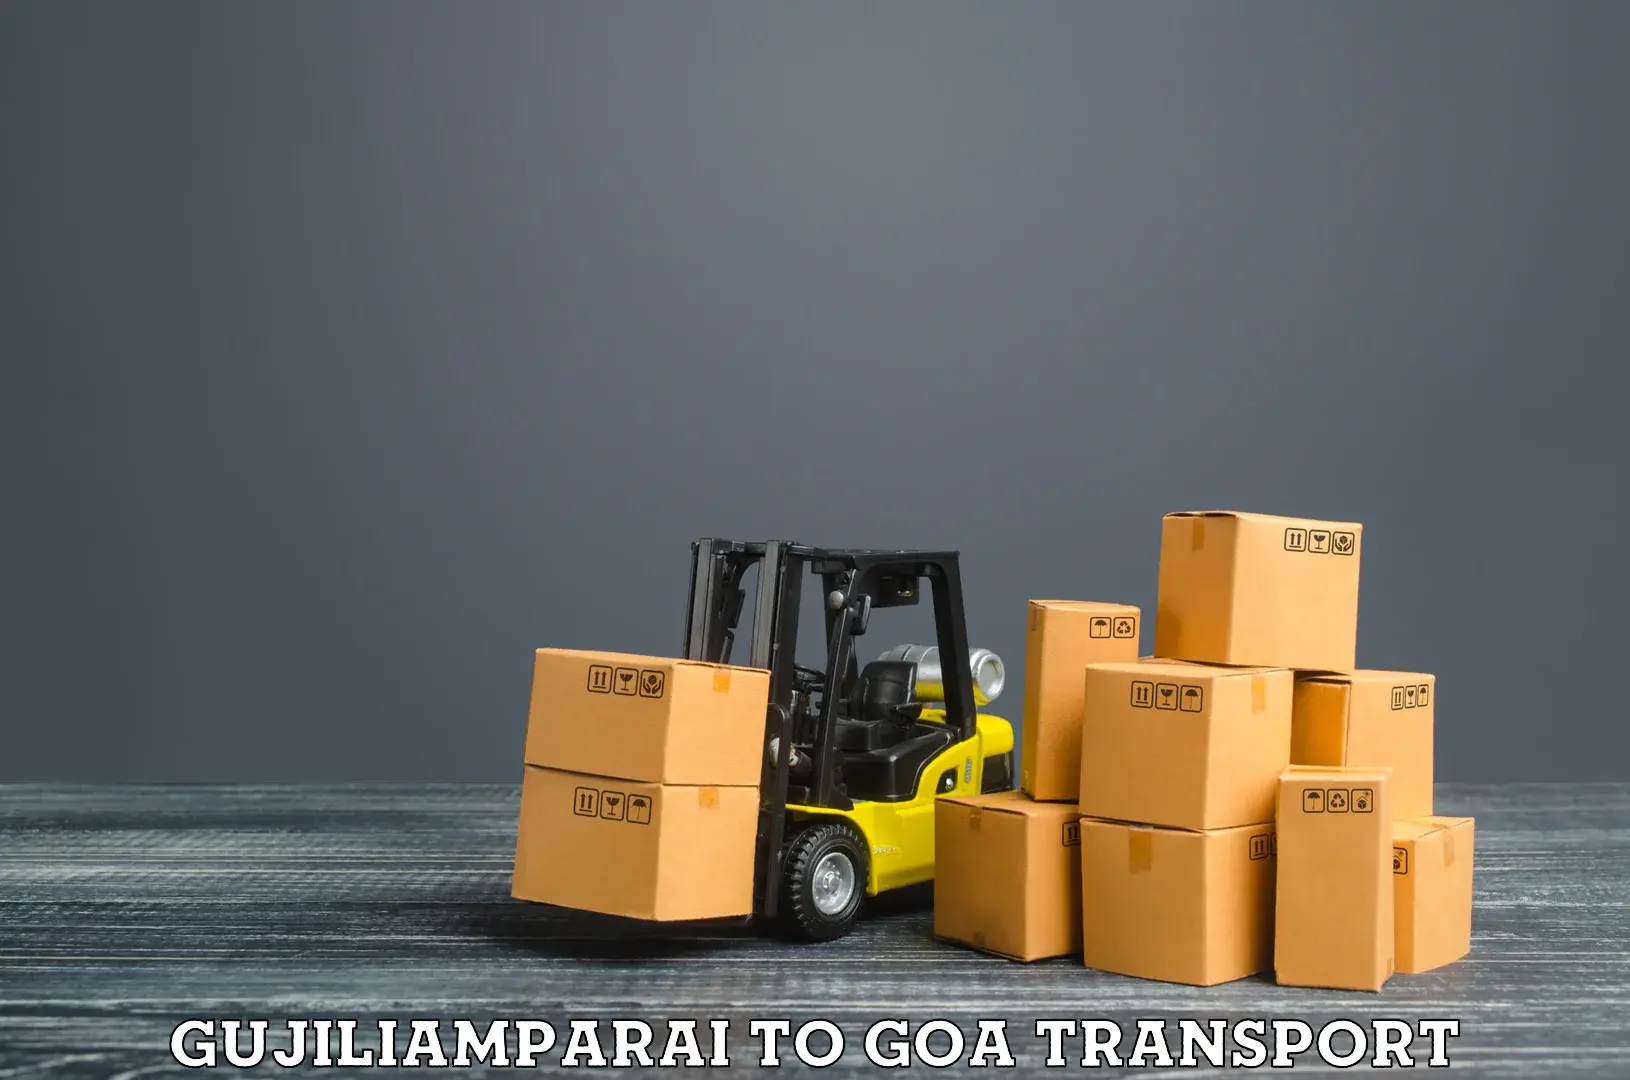 Furniture transport service Gujiliamparai to Ponda